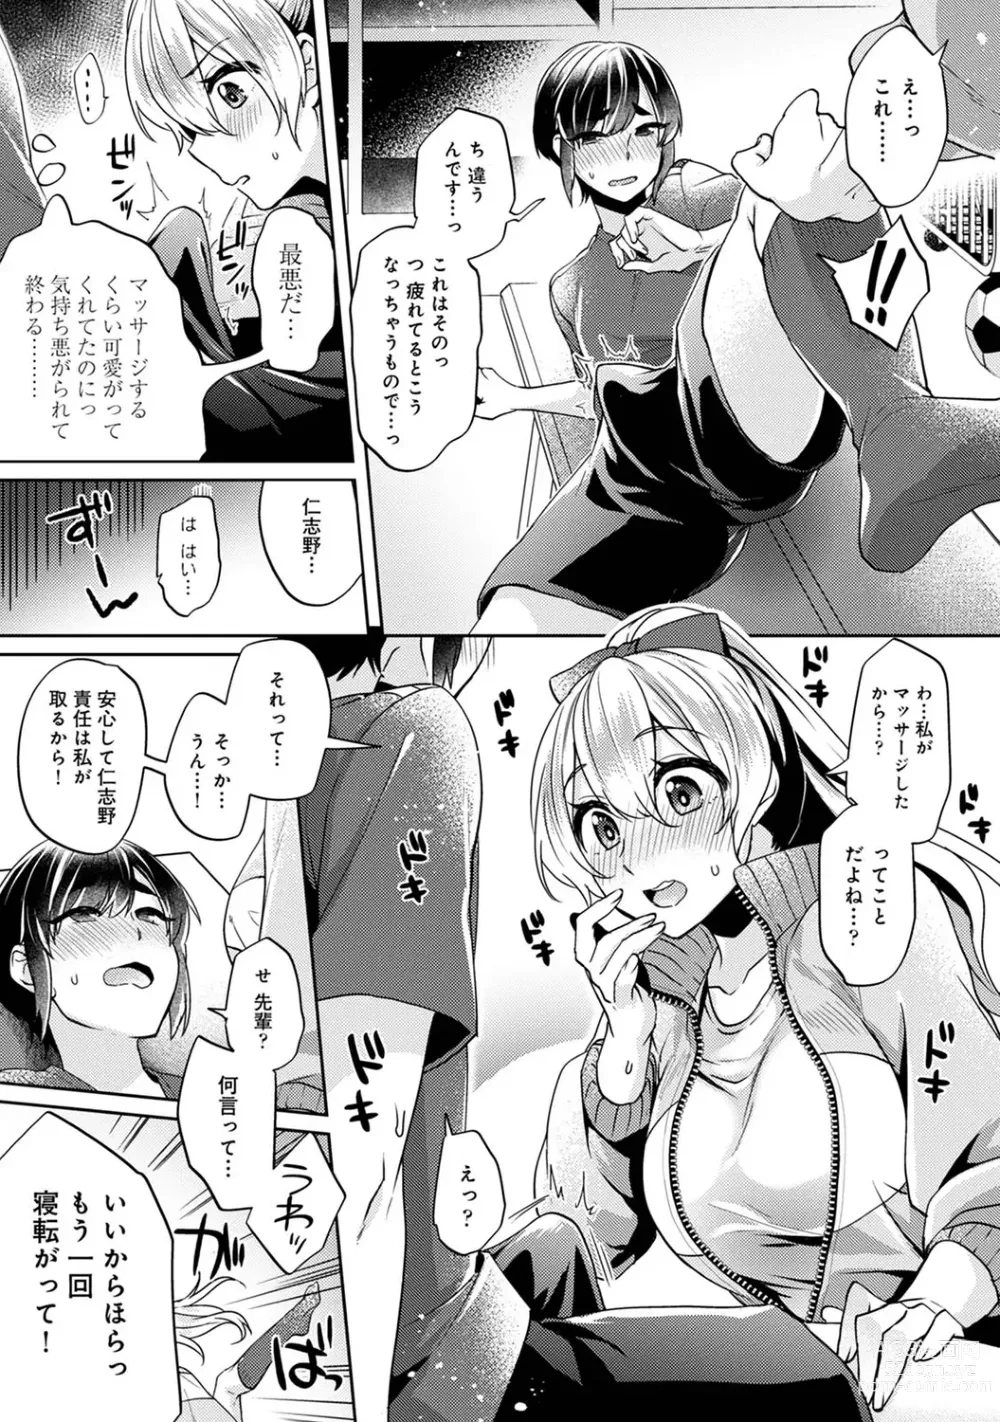 Page 11 of manga Suki Suki Diary